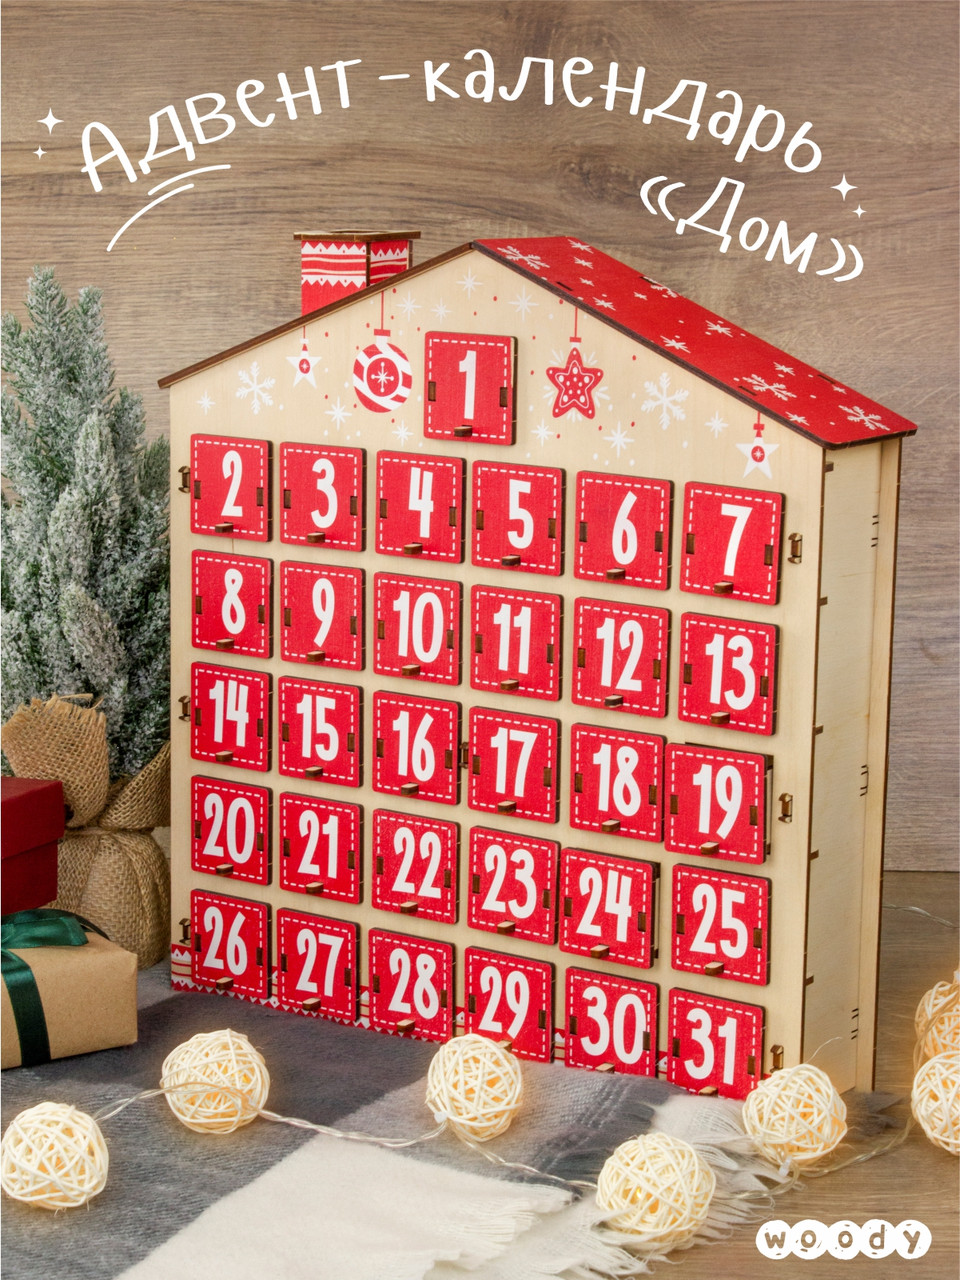 Адвент календарь деревянный "Дом" на 31 день